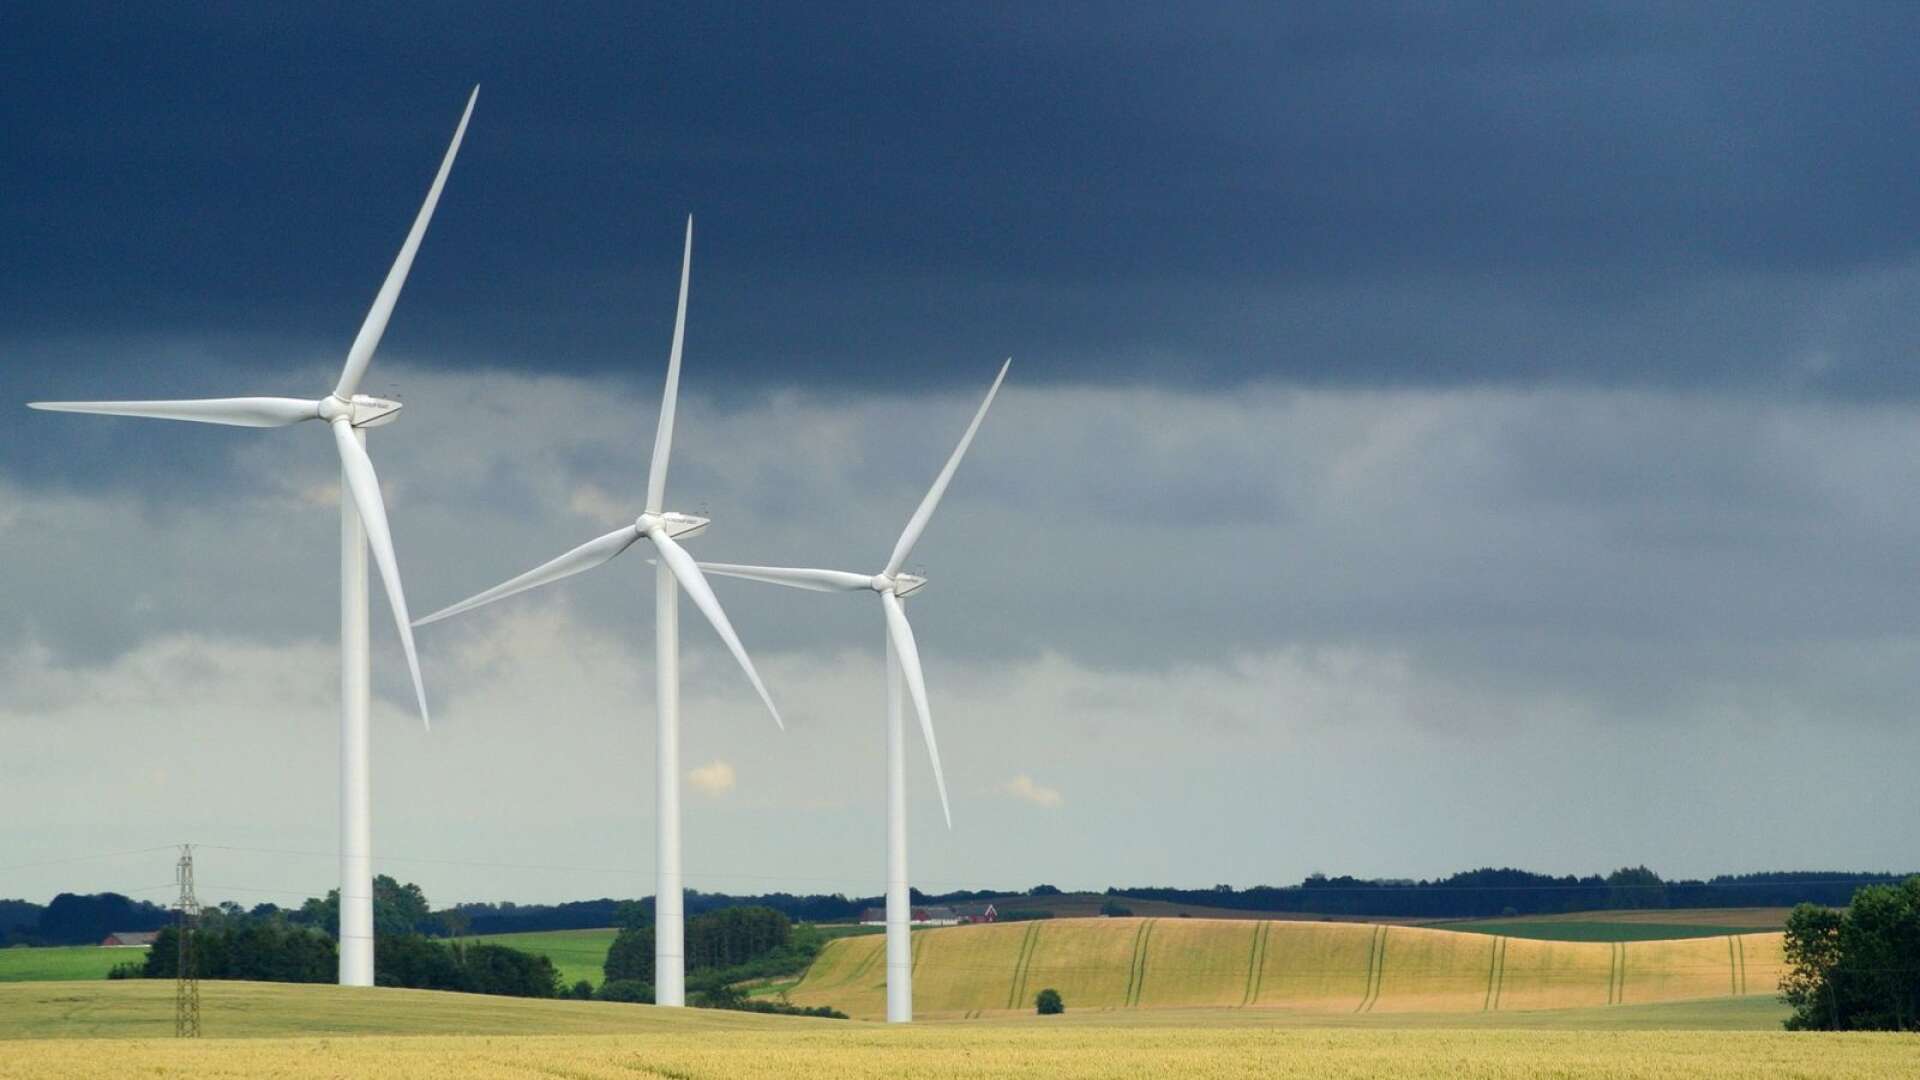 En betydande del av den nya elproduktionen kommer att utgöras av vindkraft – eftersom vindkraften har lägst produktionskostnad av de förnybara kraftslag som kan byggas ut i stor skala, skriver Charlotte Unger Larson.